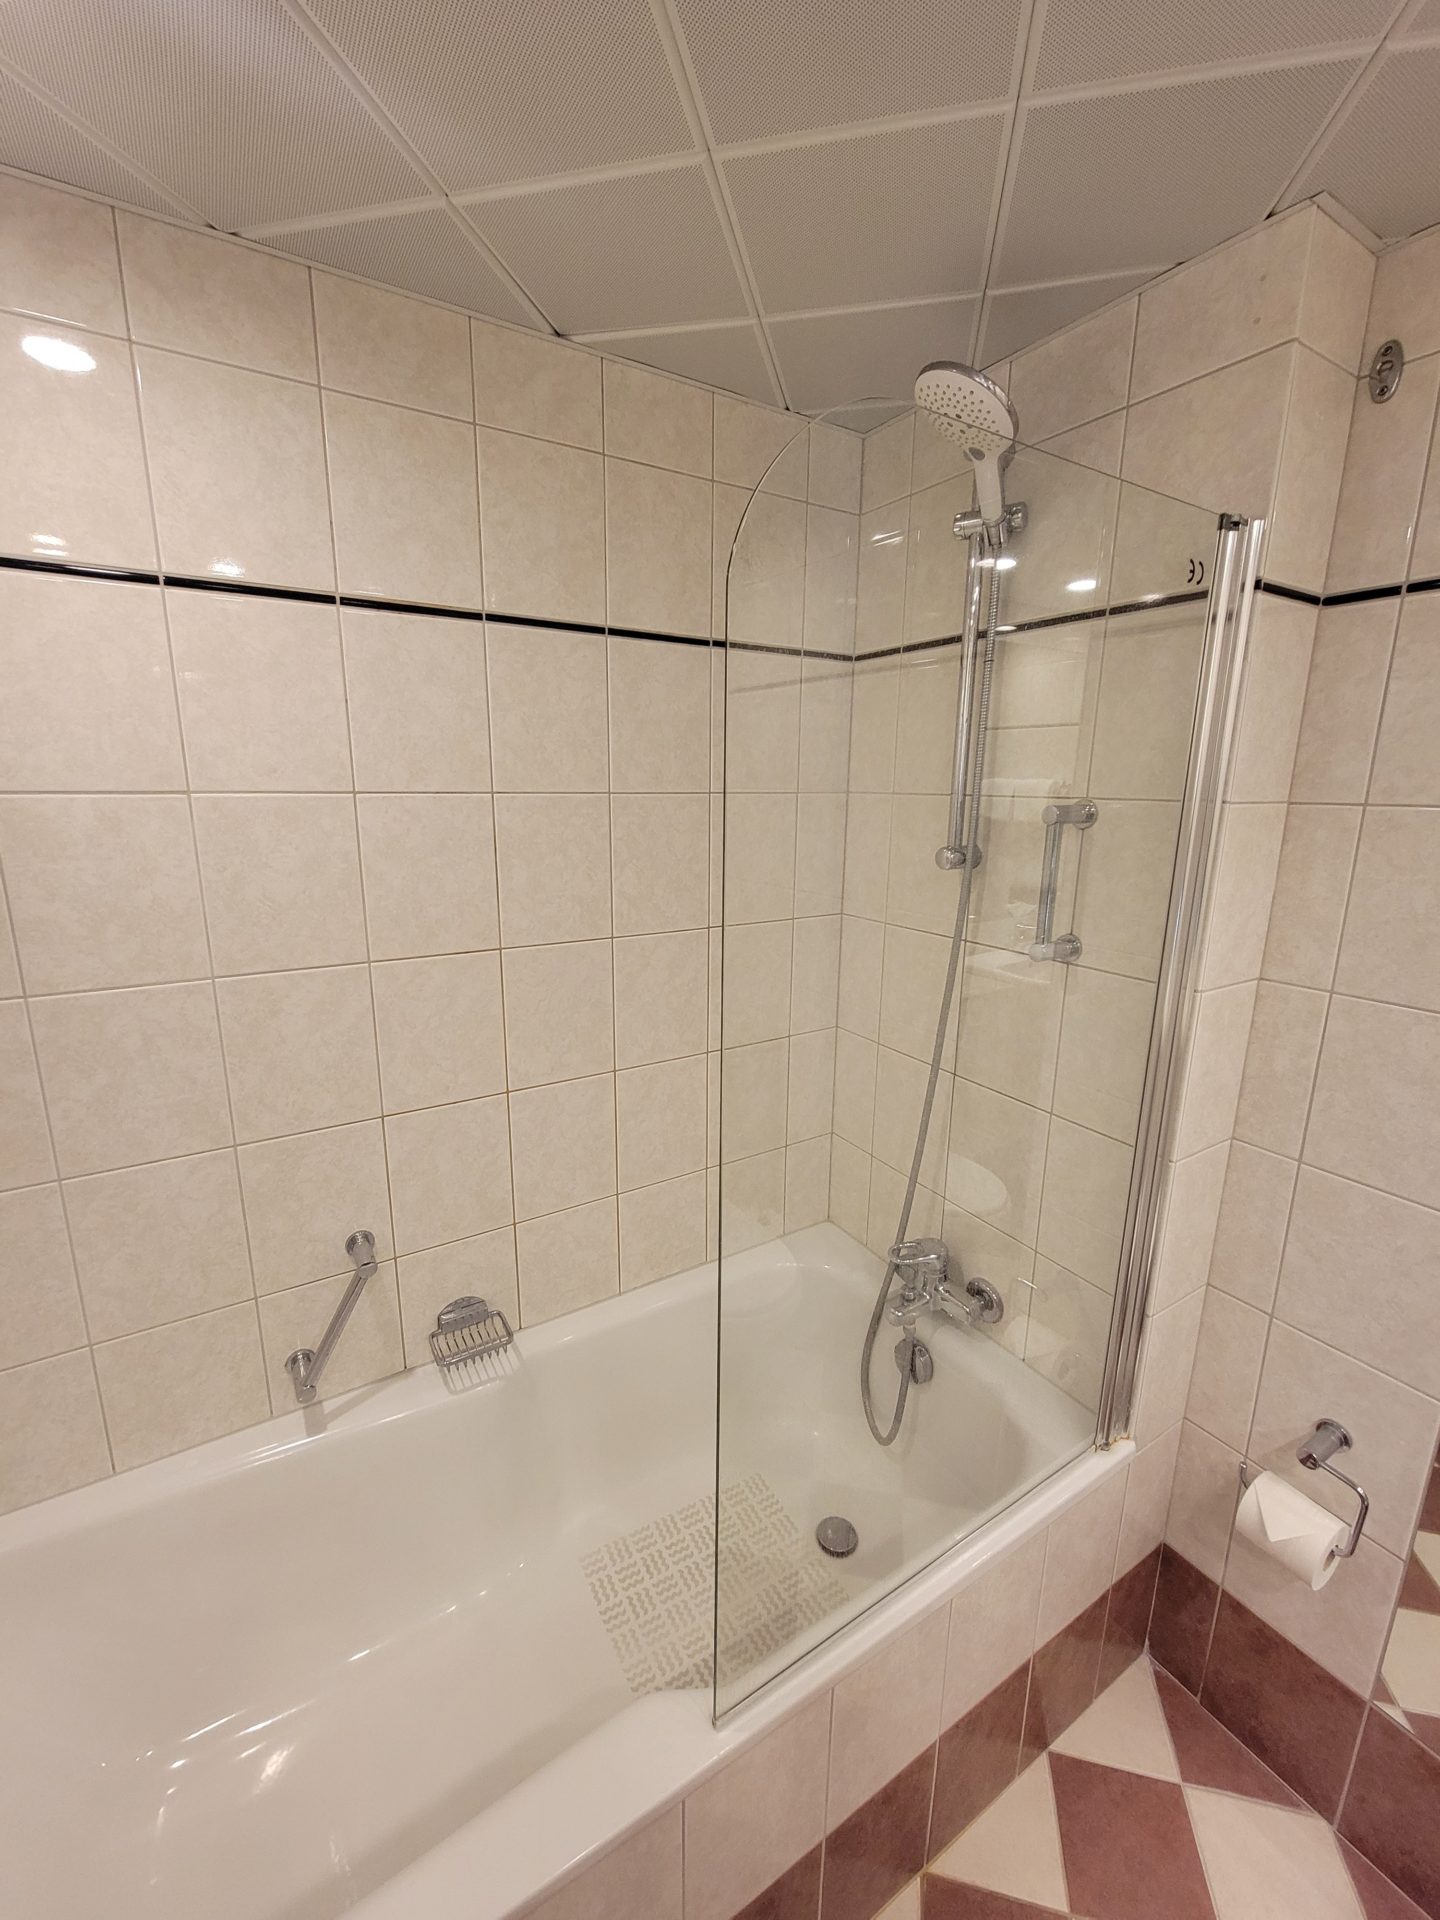 a shower and bathtub in a bathroom